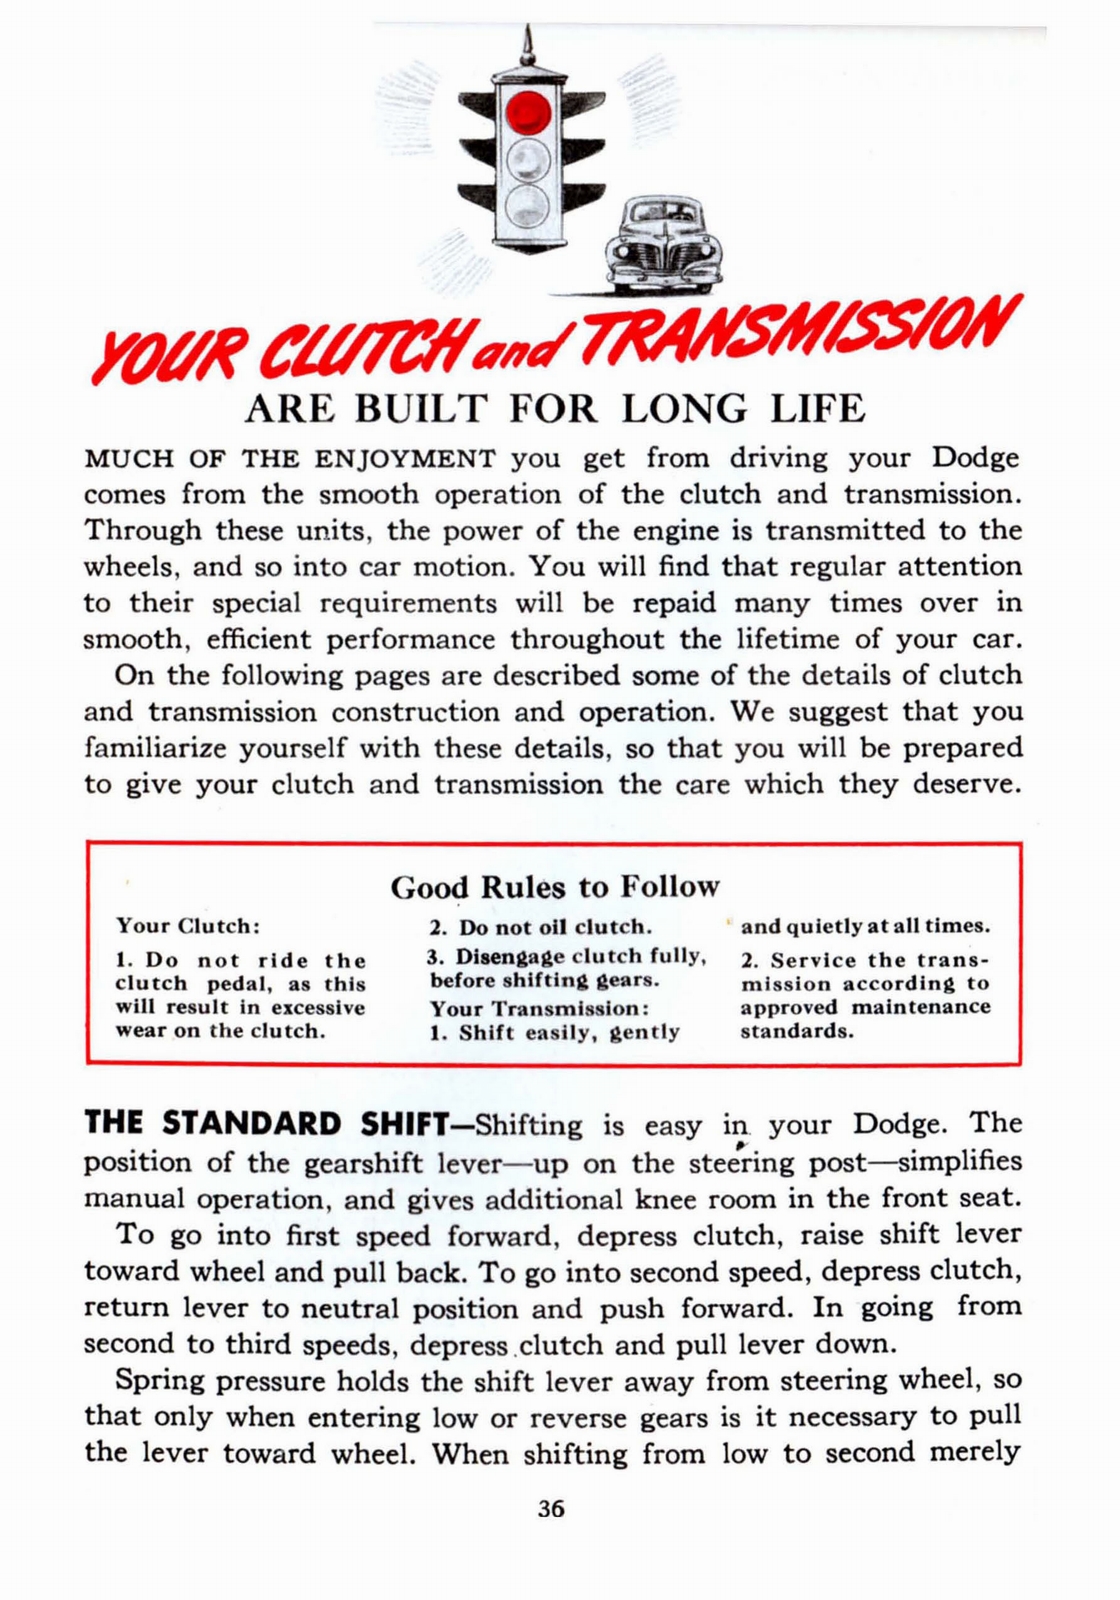 n_1941 Dodge Owners Manual-36.jpg